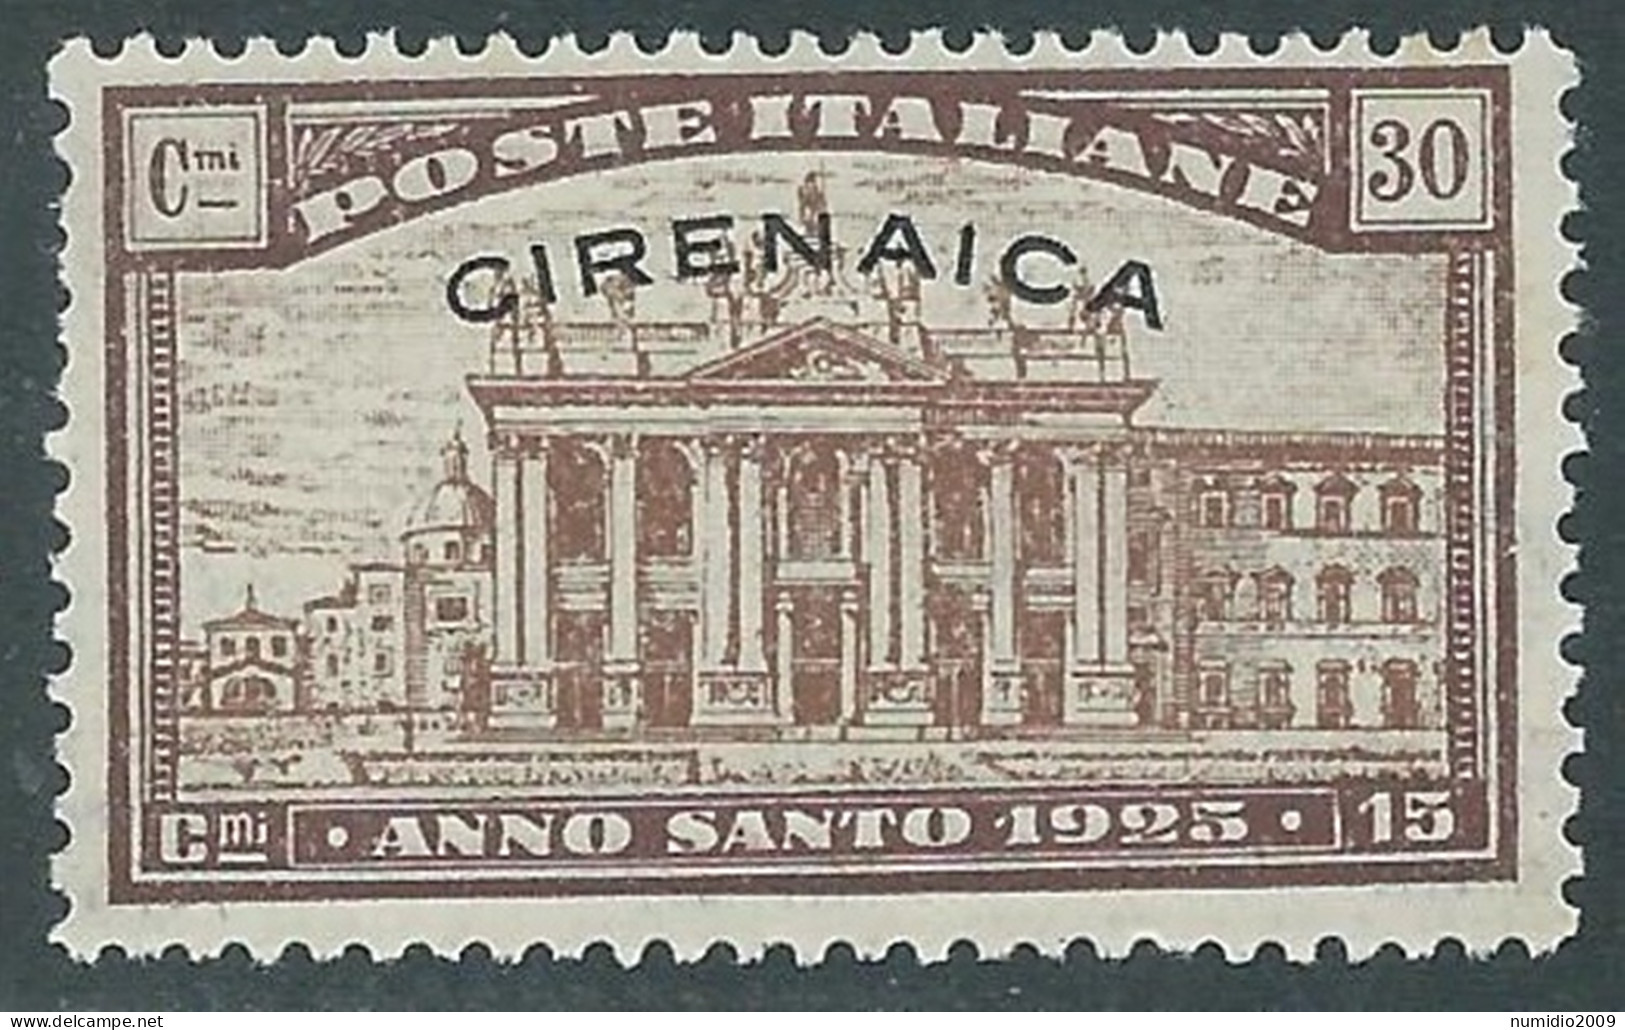 1925 CIRENAICA ANNO SANTO 30 CENT MNH ** - RA21-4 - Cirenaica